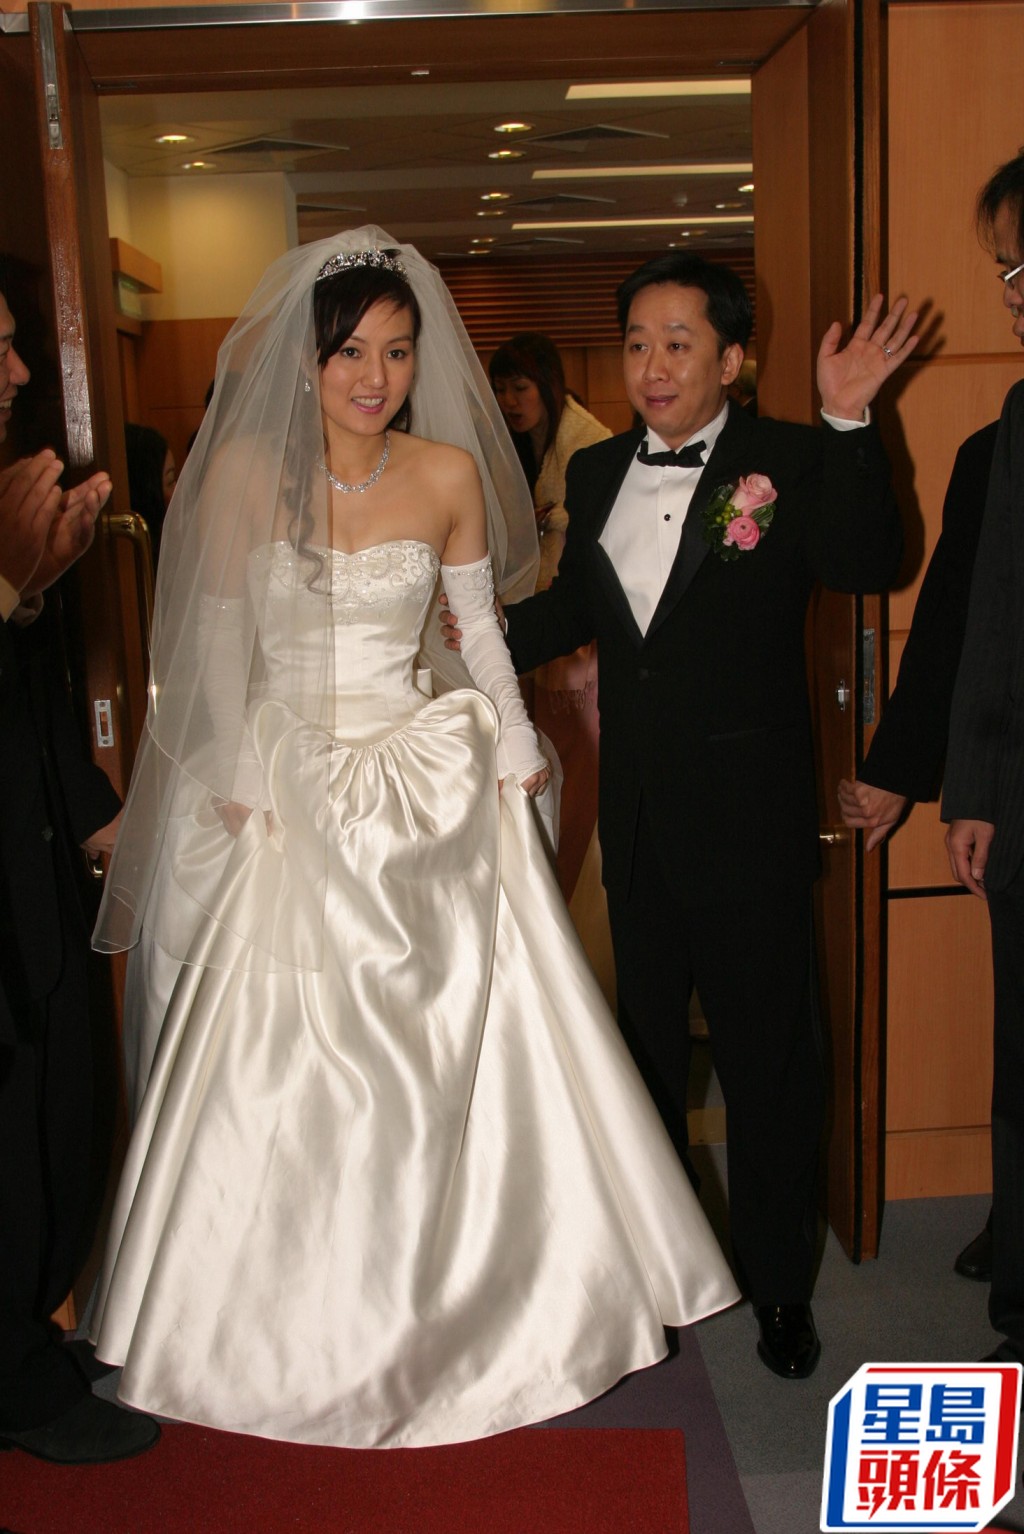 邓兆荣结婚时搞得非常盛大。